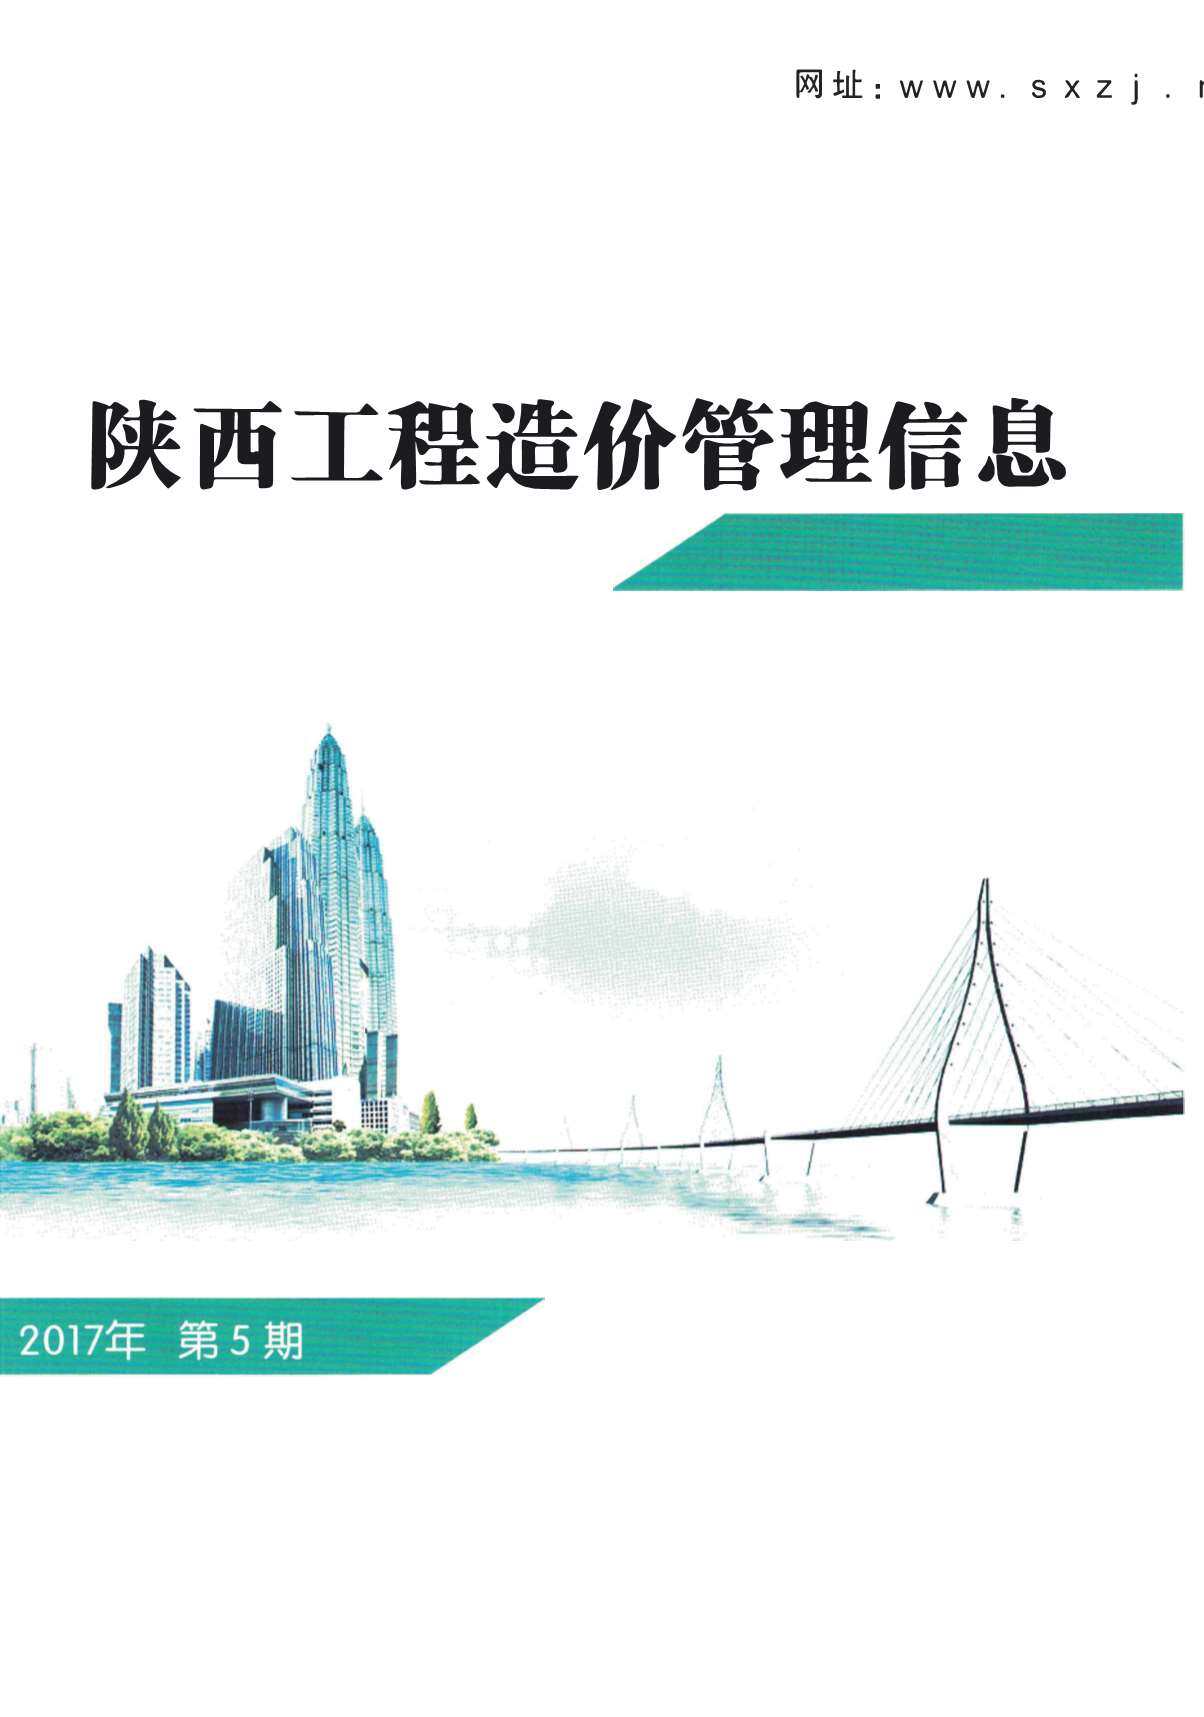 陕西省2017年5月工程造价信息期刊